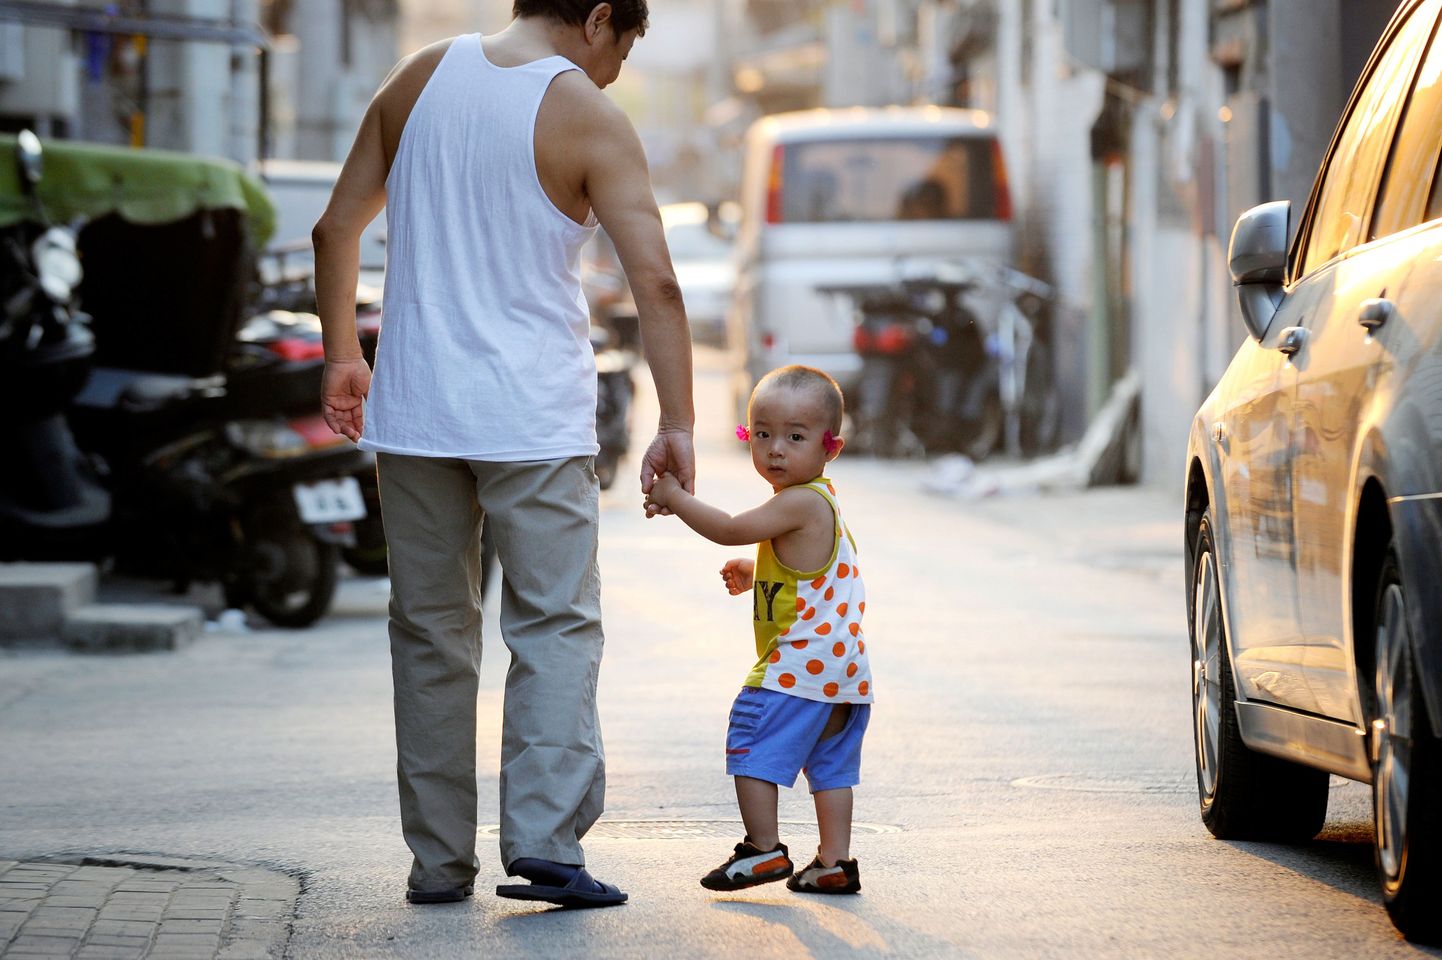 Hiina vanemad panevad lapsed ketti, kuna ei jõua lastehoiu eest maksta